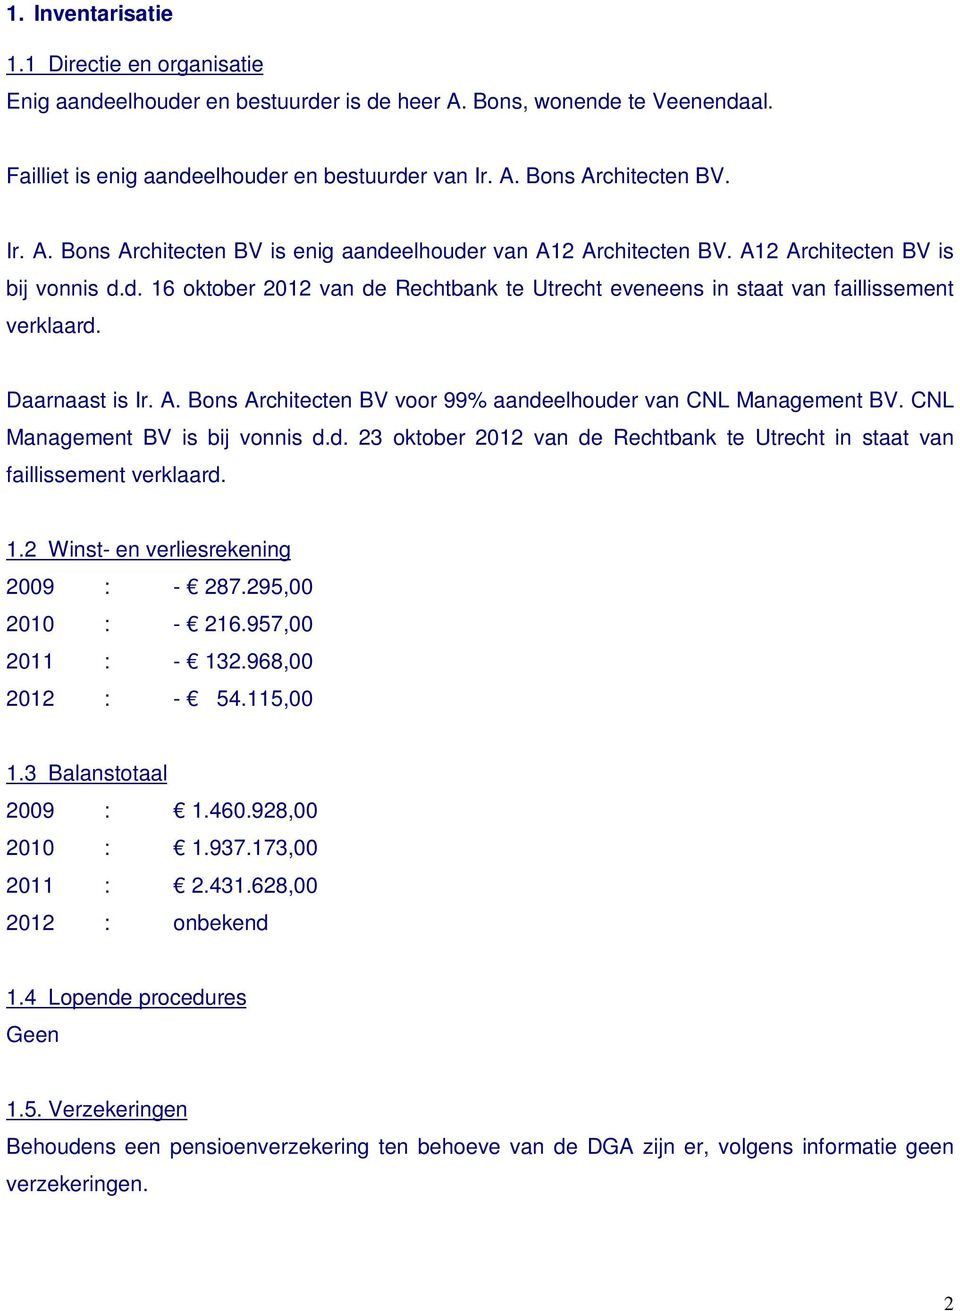 Daarnaast is Ir. A. Bons Architecten BV voor 99% aandeelhouder van CNL Management BV. CNL Management BV is bij vonnis d.d. 23 oktober 2012 van de Rechtbank te Utrecht in staat van faillissement verklaard.